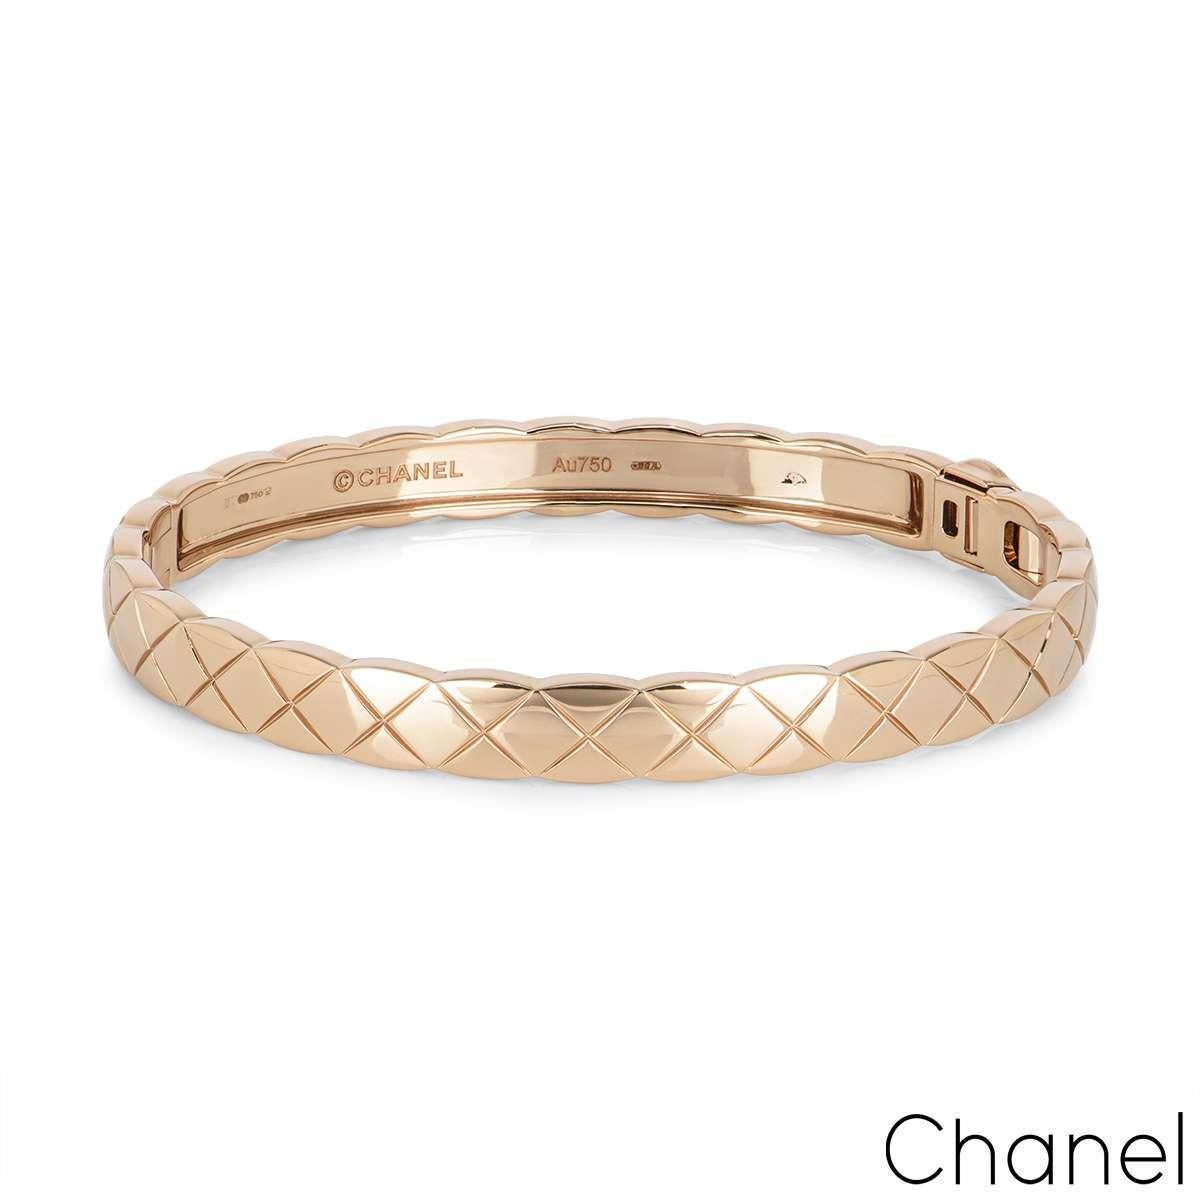 chanel bracelet price